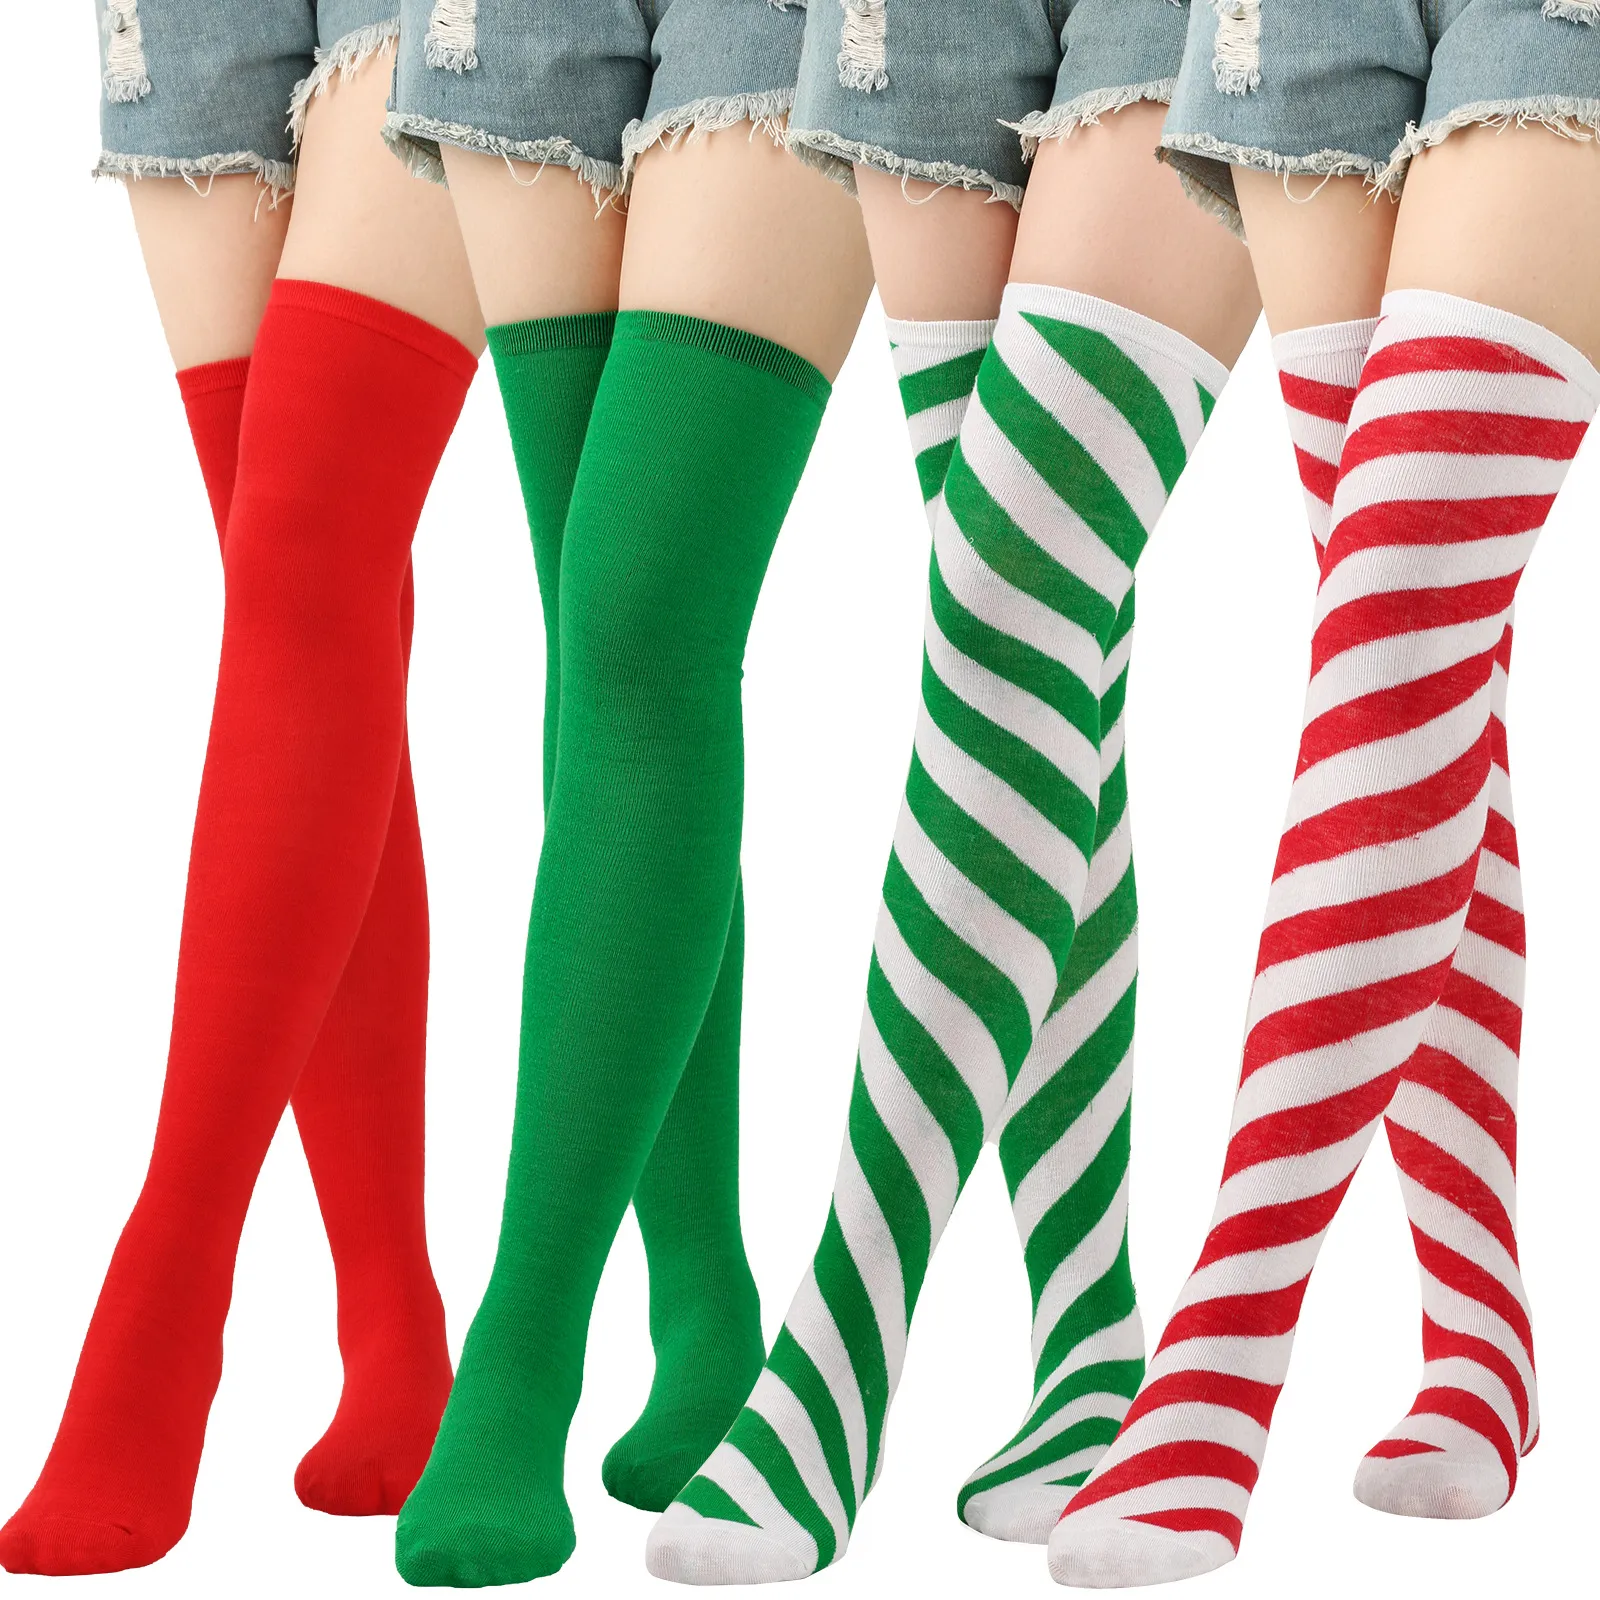 Frauen Girls Socken Halloween Weihnachtsfeierpartys Mode Kontrast gestreifte Ball Socken Knie High Socken Weihnachtsstreifen Strümpfe